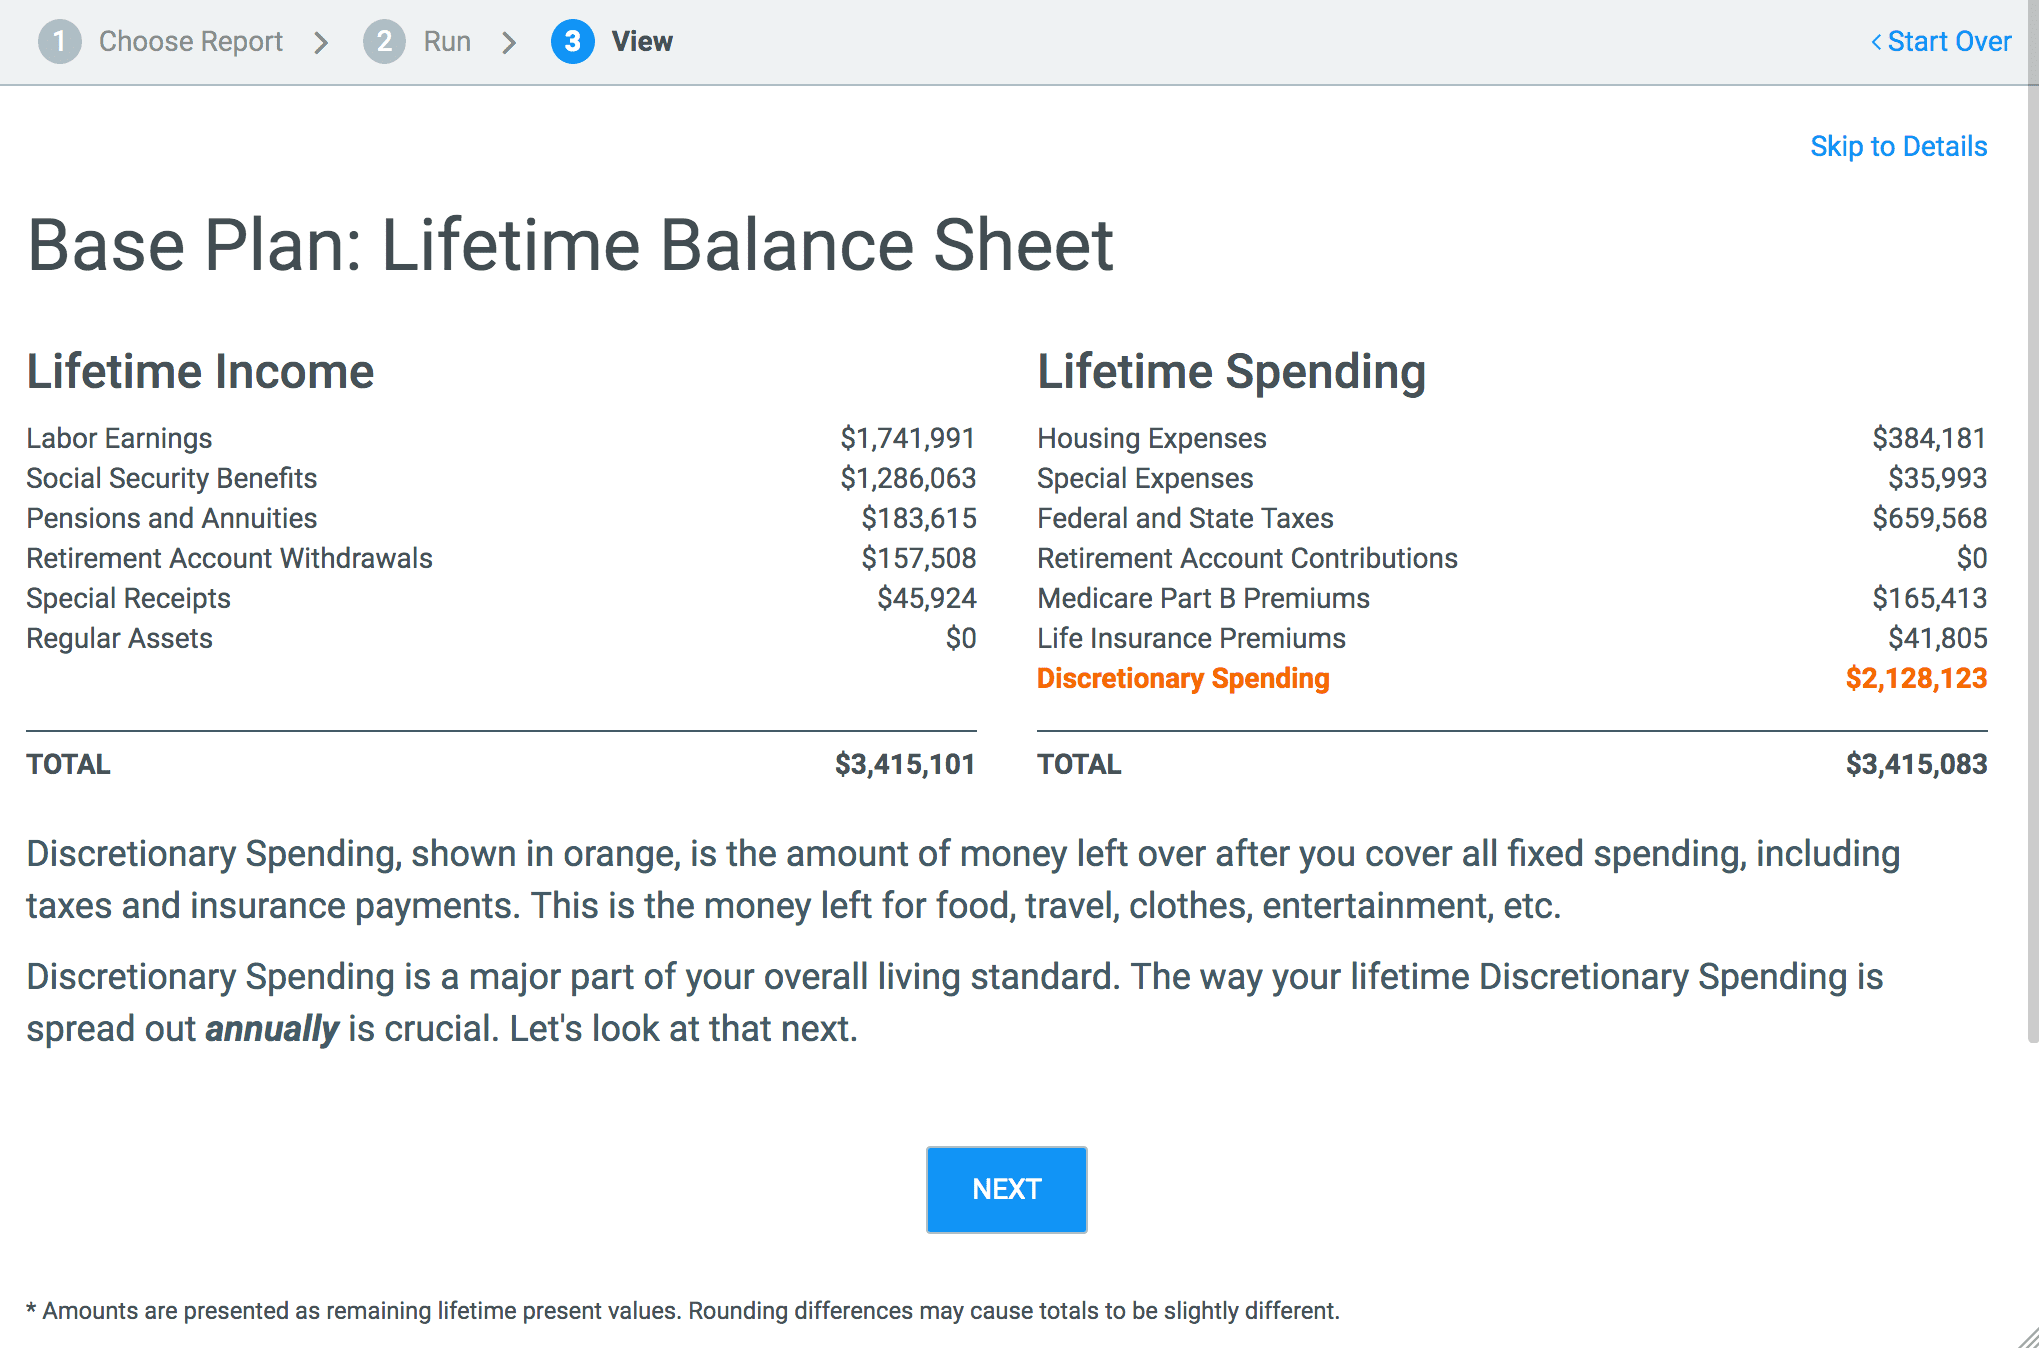 MaxiFi screen showing Base Plan Lifetime Balance Sheet results